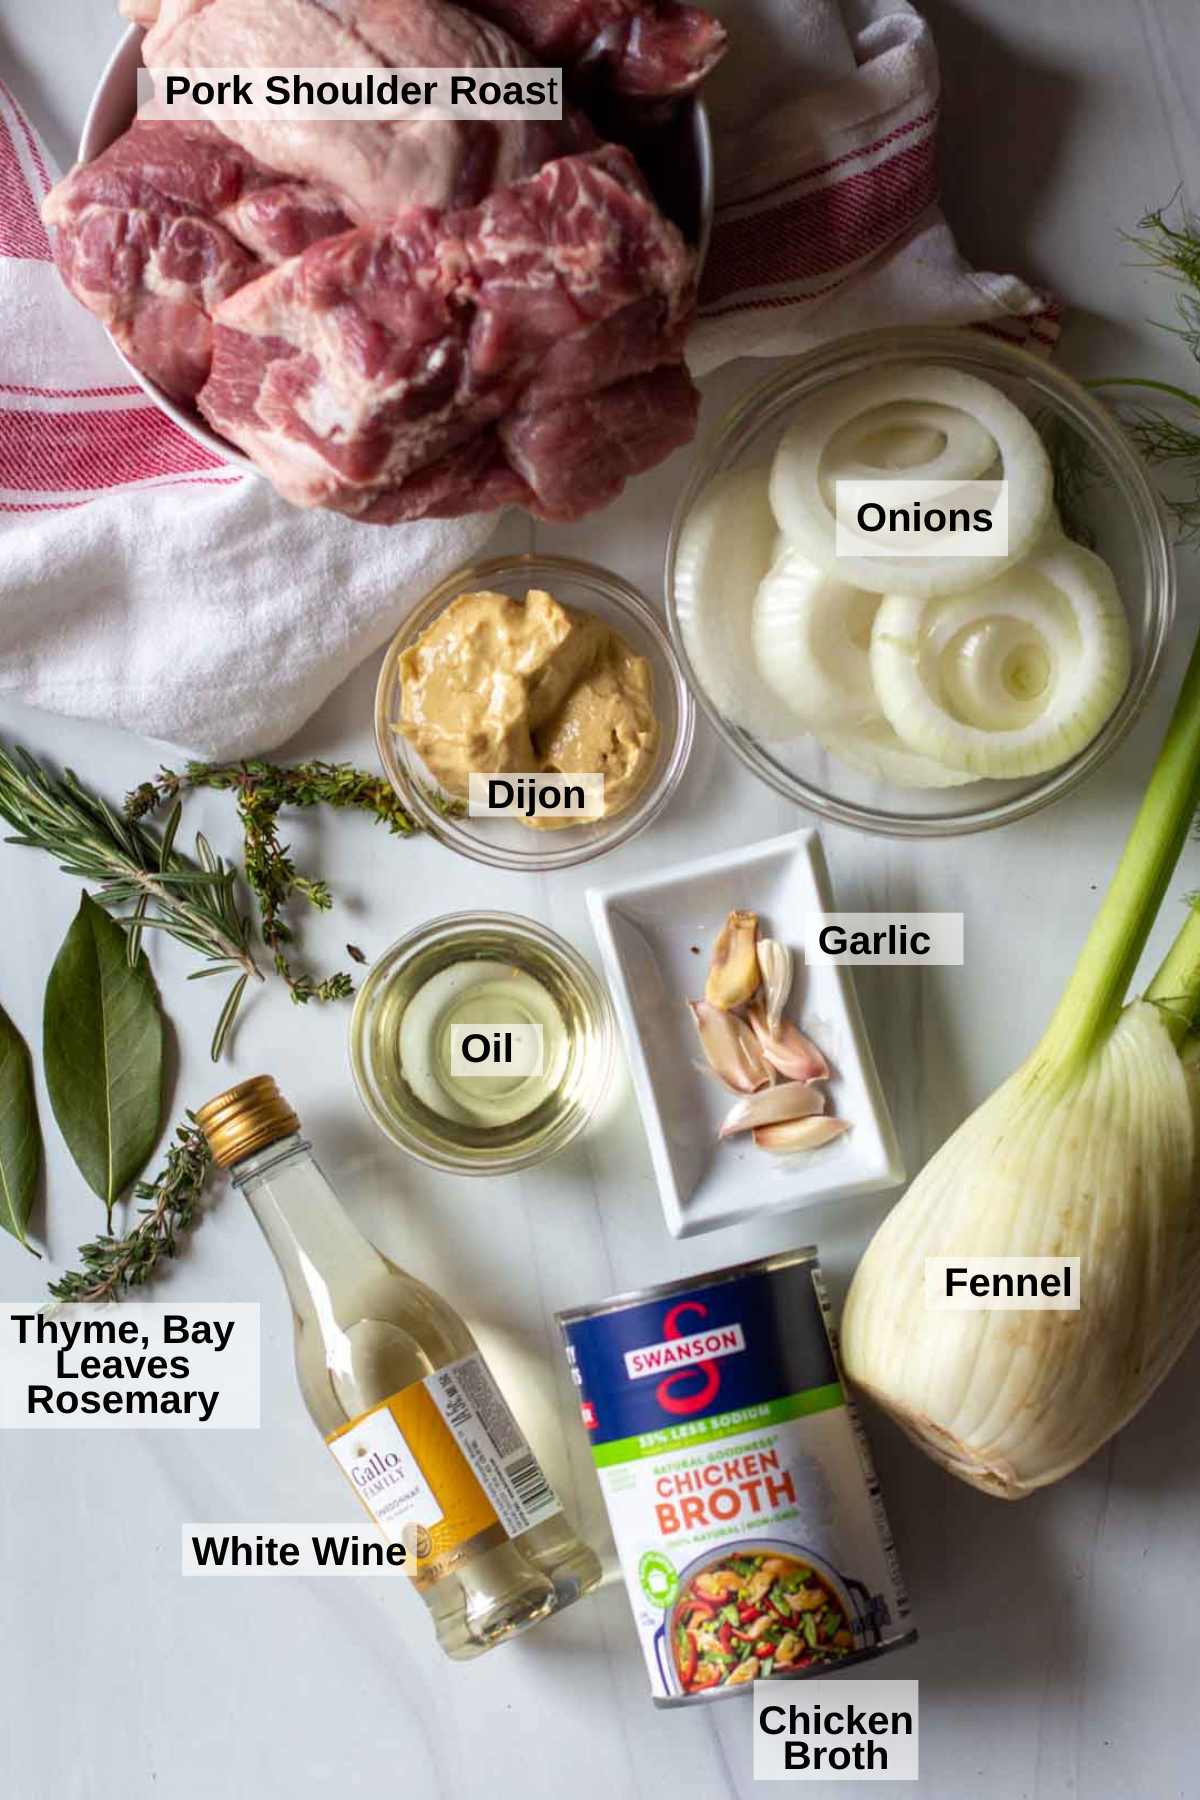 Ingredients to make pressure cooker pork roast.